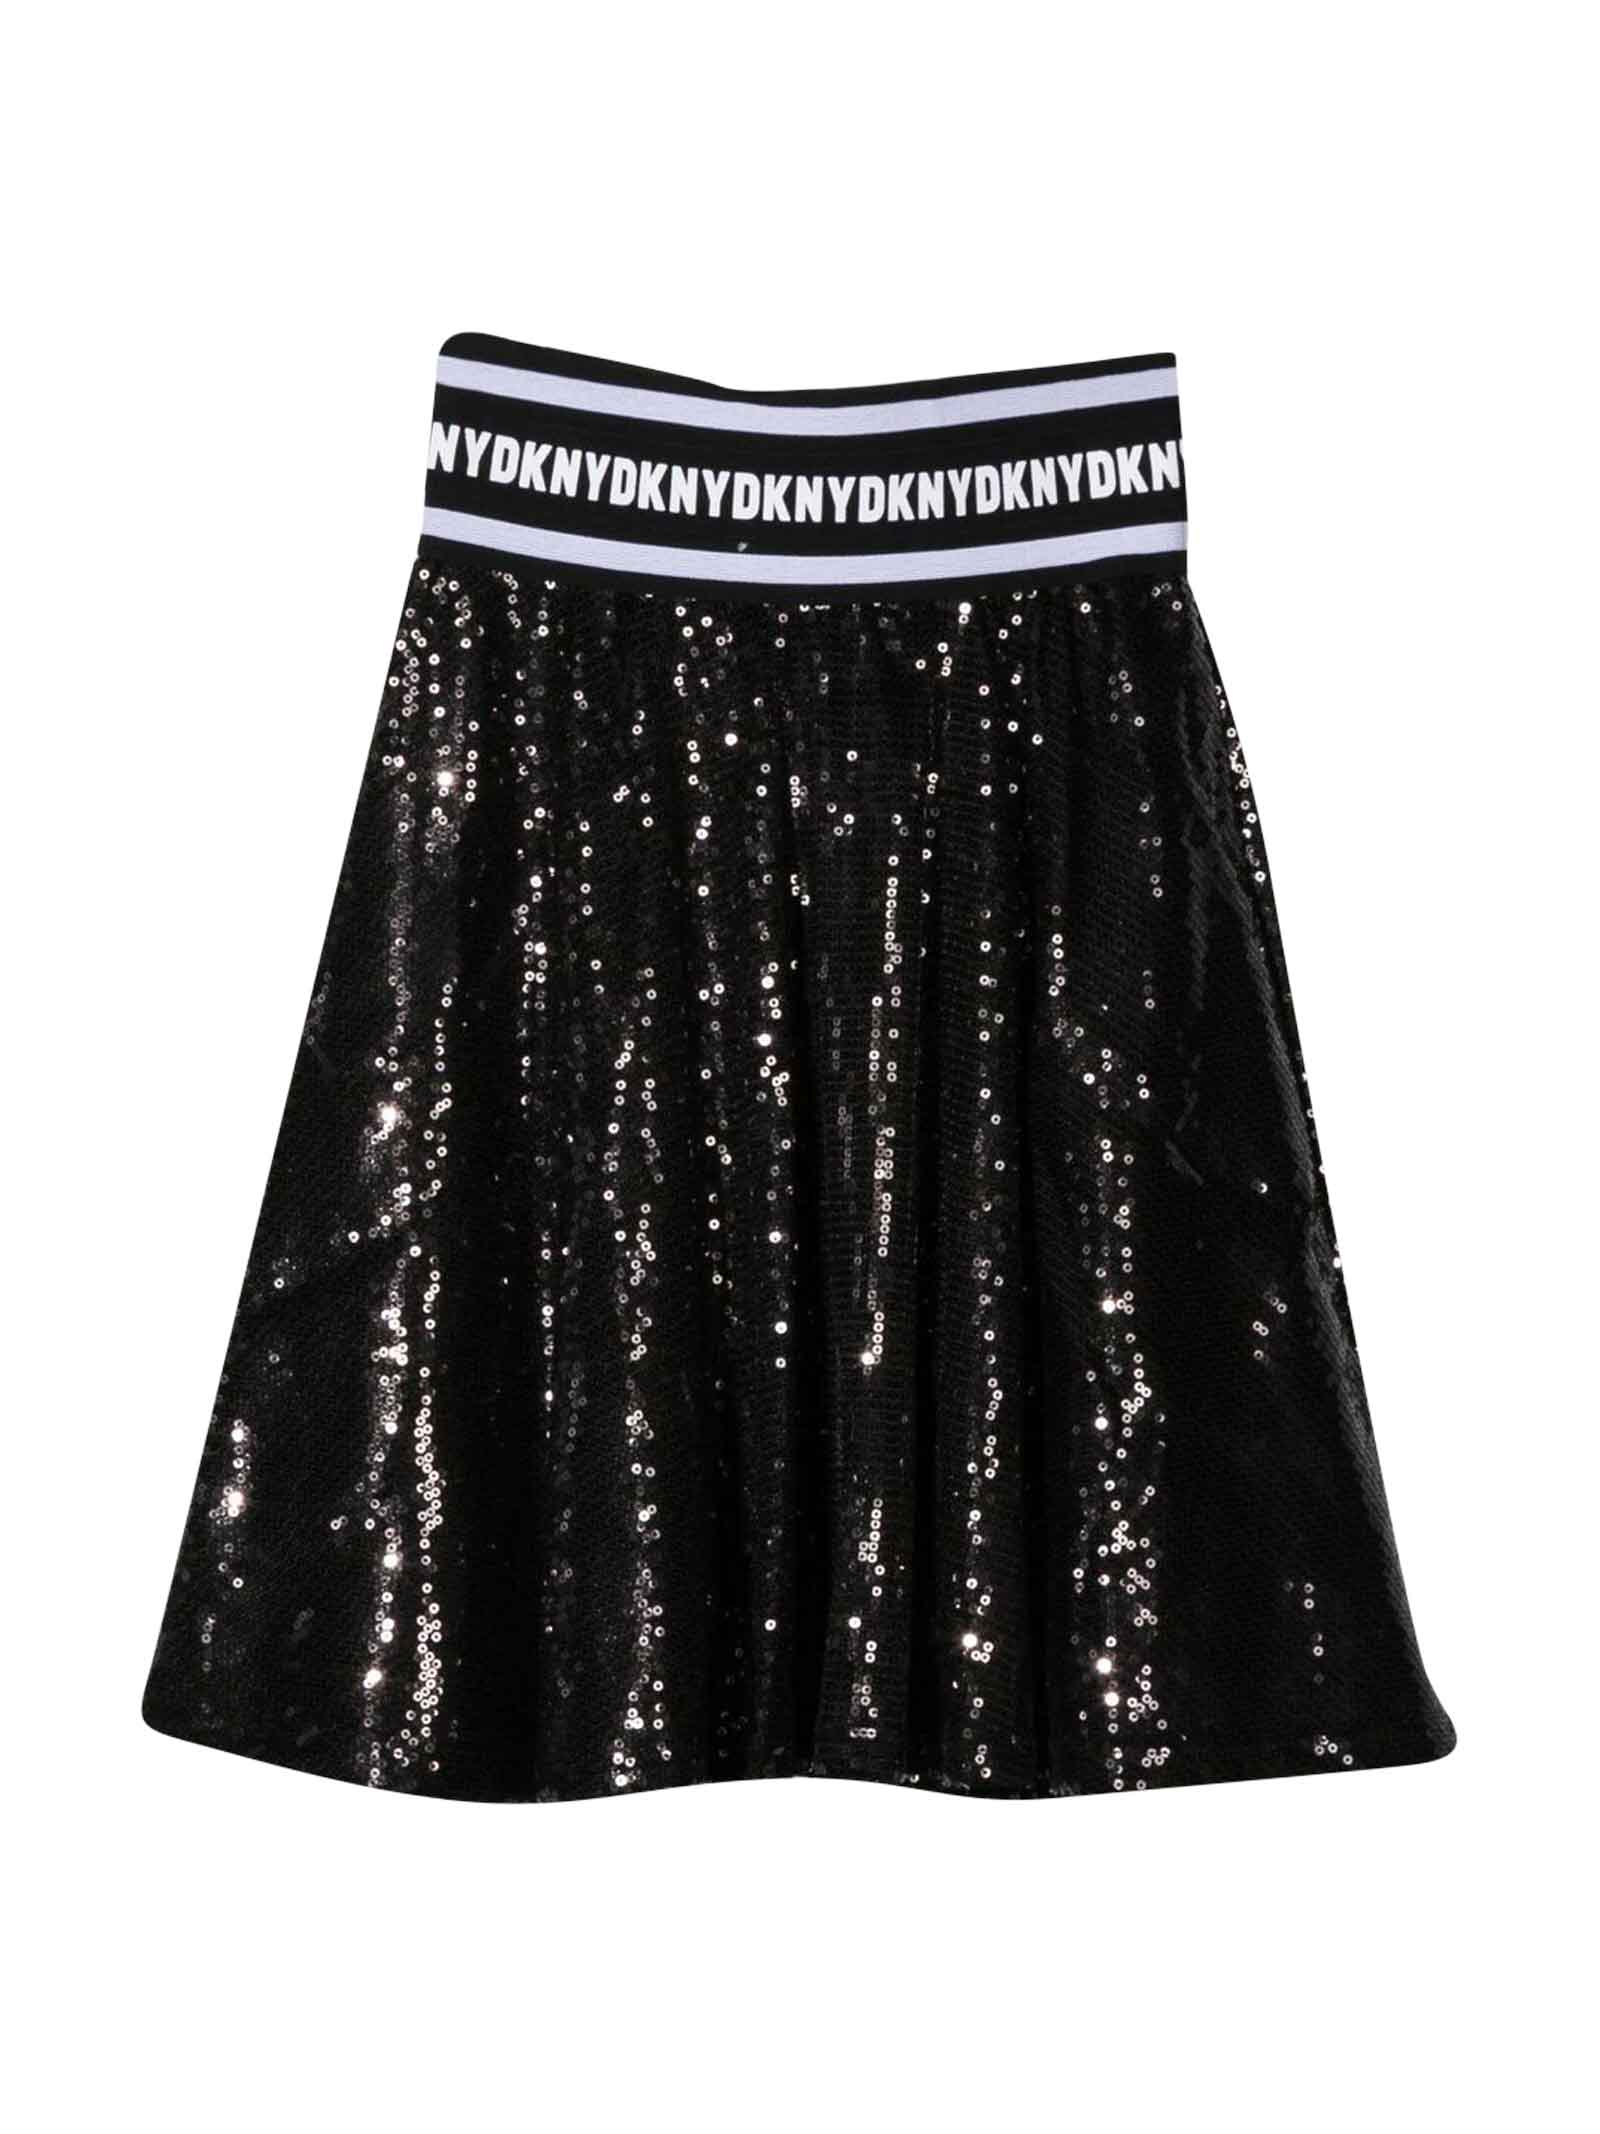 DKNY Black Skirt Girl